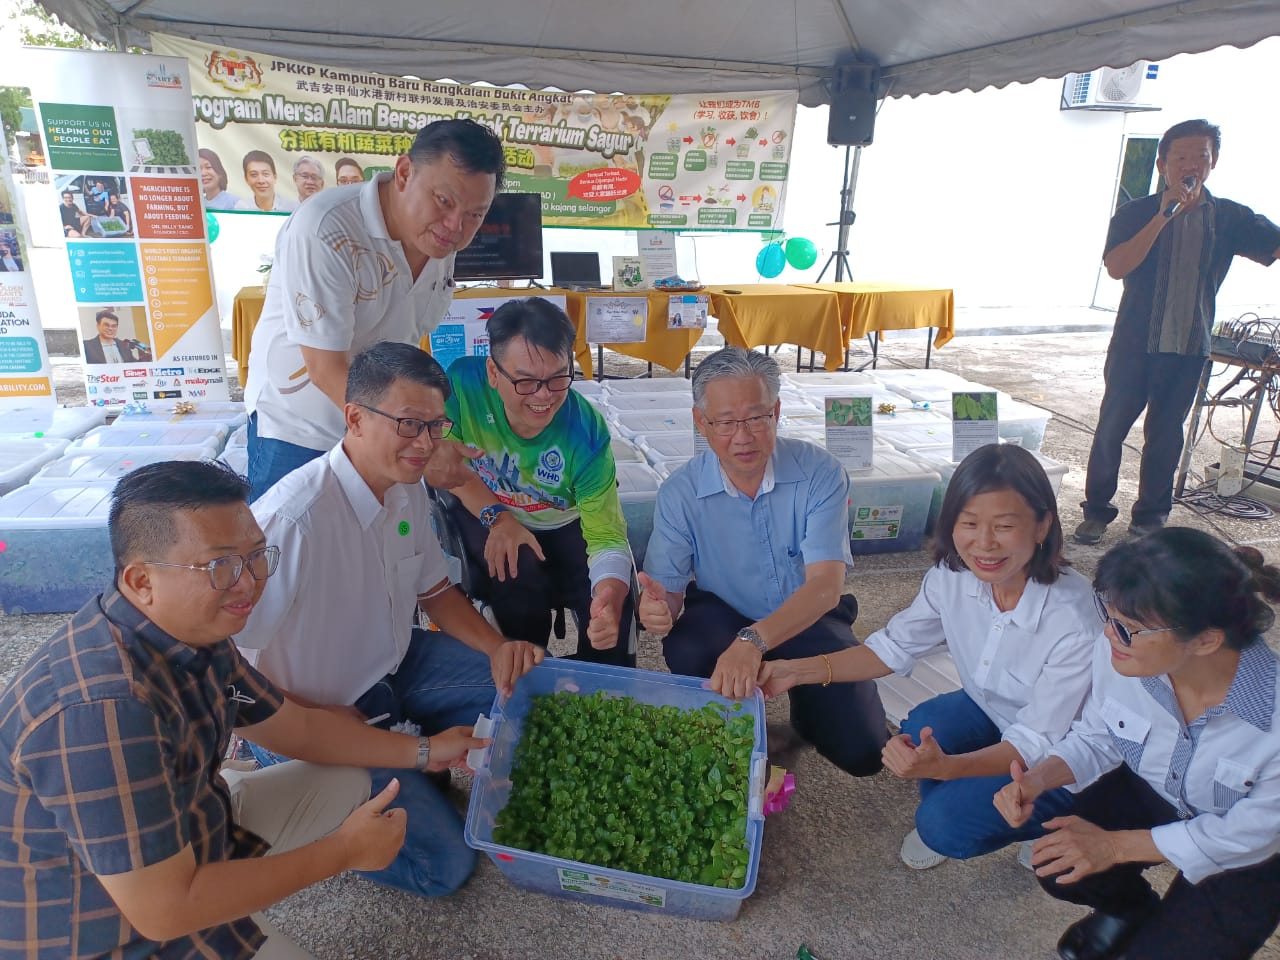 大都会/身障博士邓志成在仙水港村联邦村委会安排下，向村民分享有机蔬菜种植容器的妙方